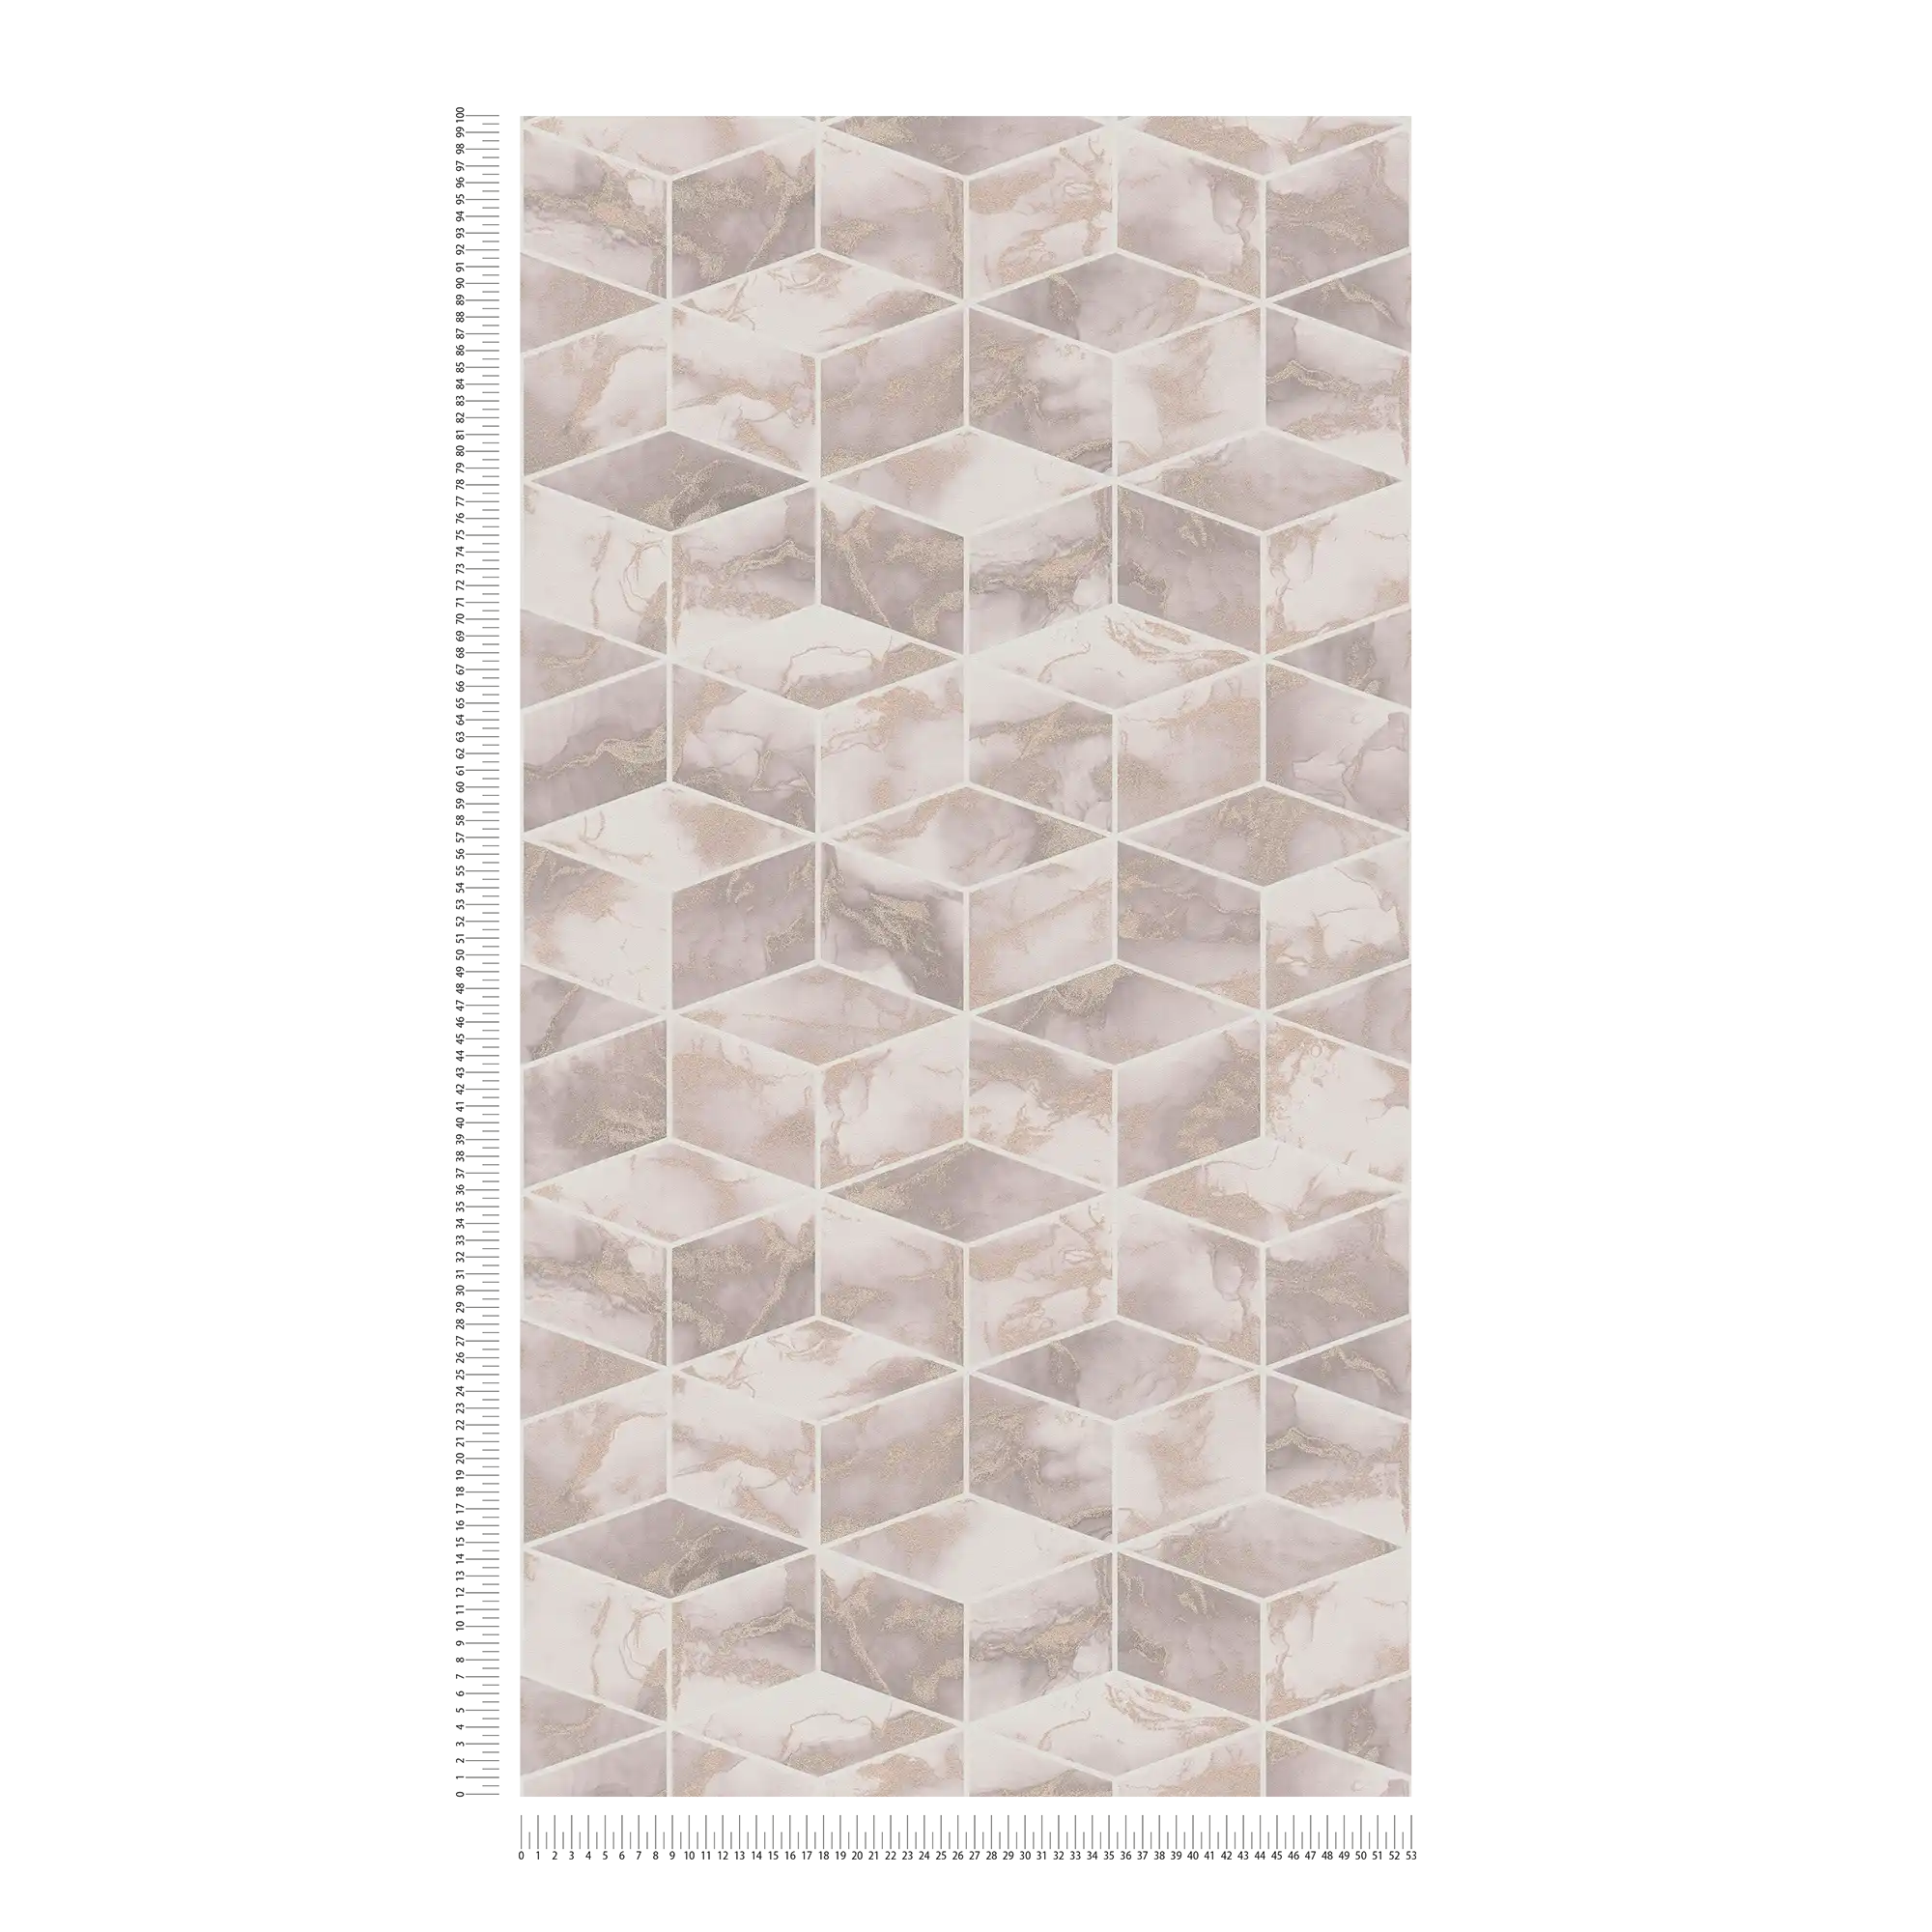             Fliesen Tapete mit Marmor & Metallic-Effekt – Metallic, Rosa, Weiß
        